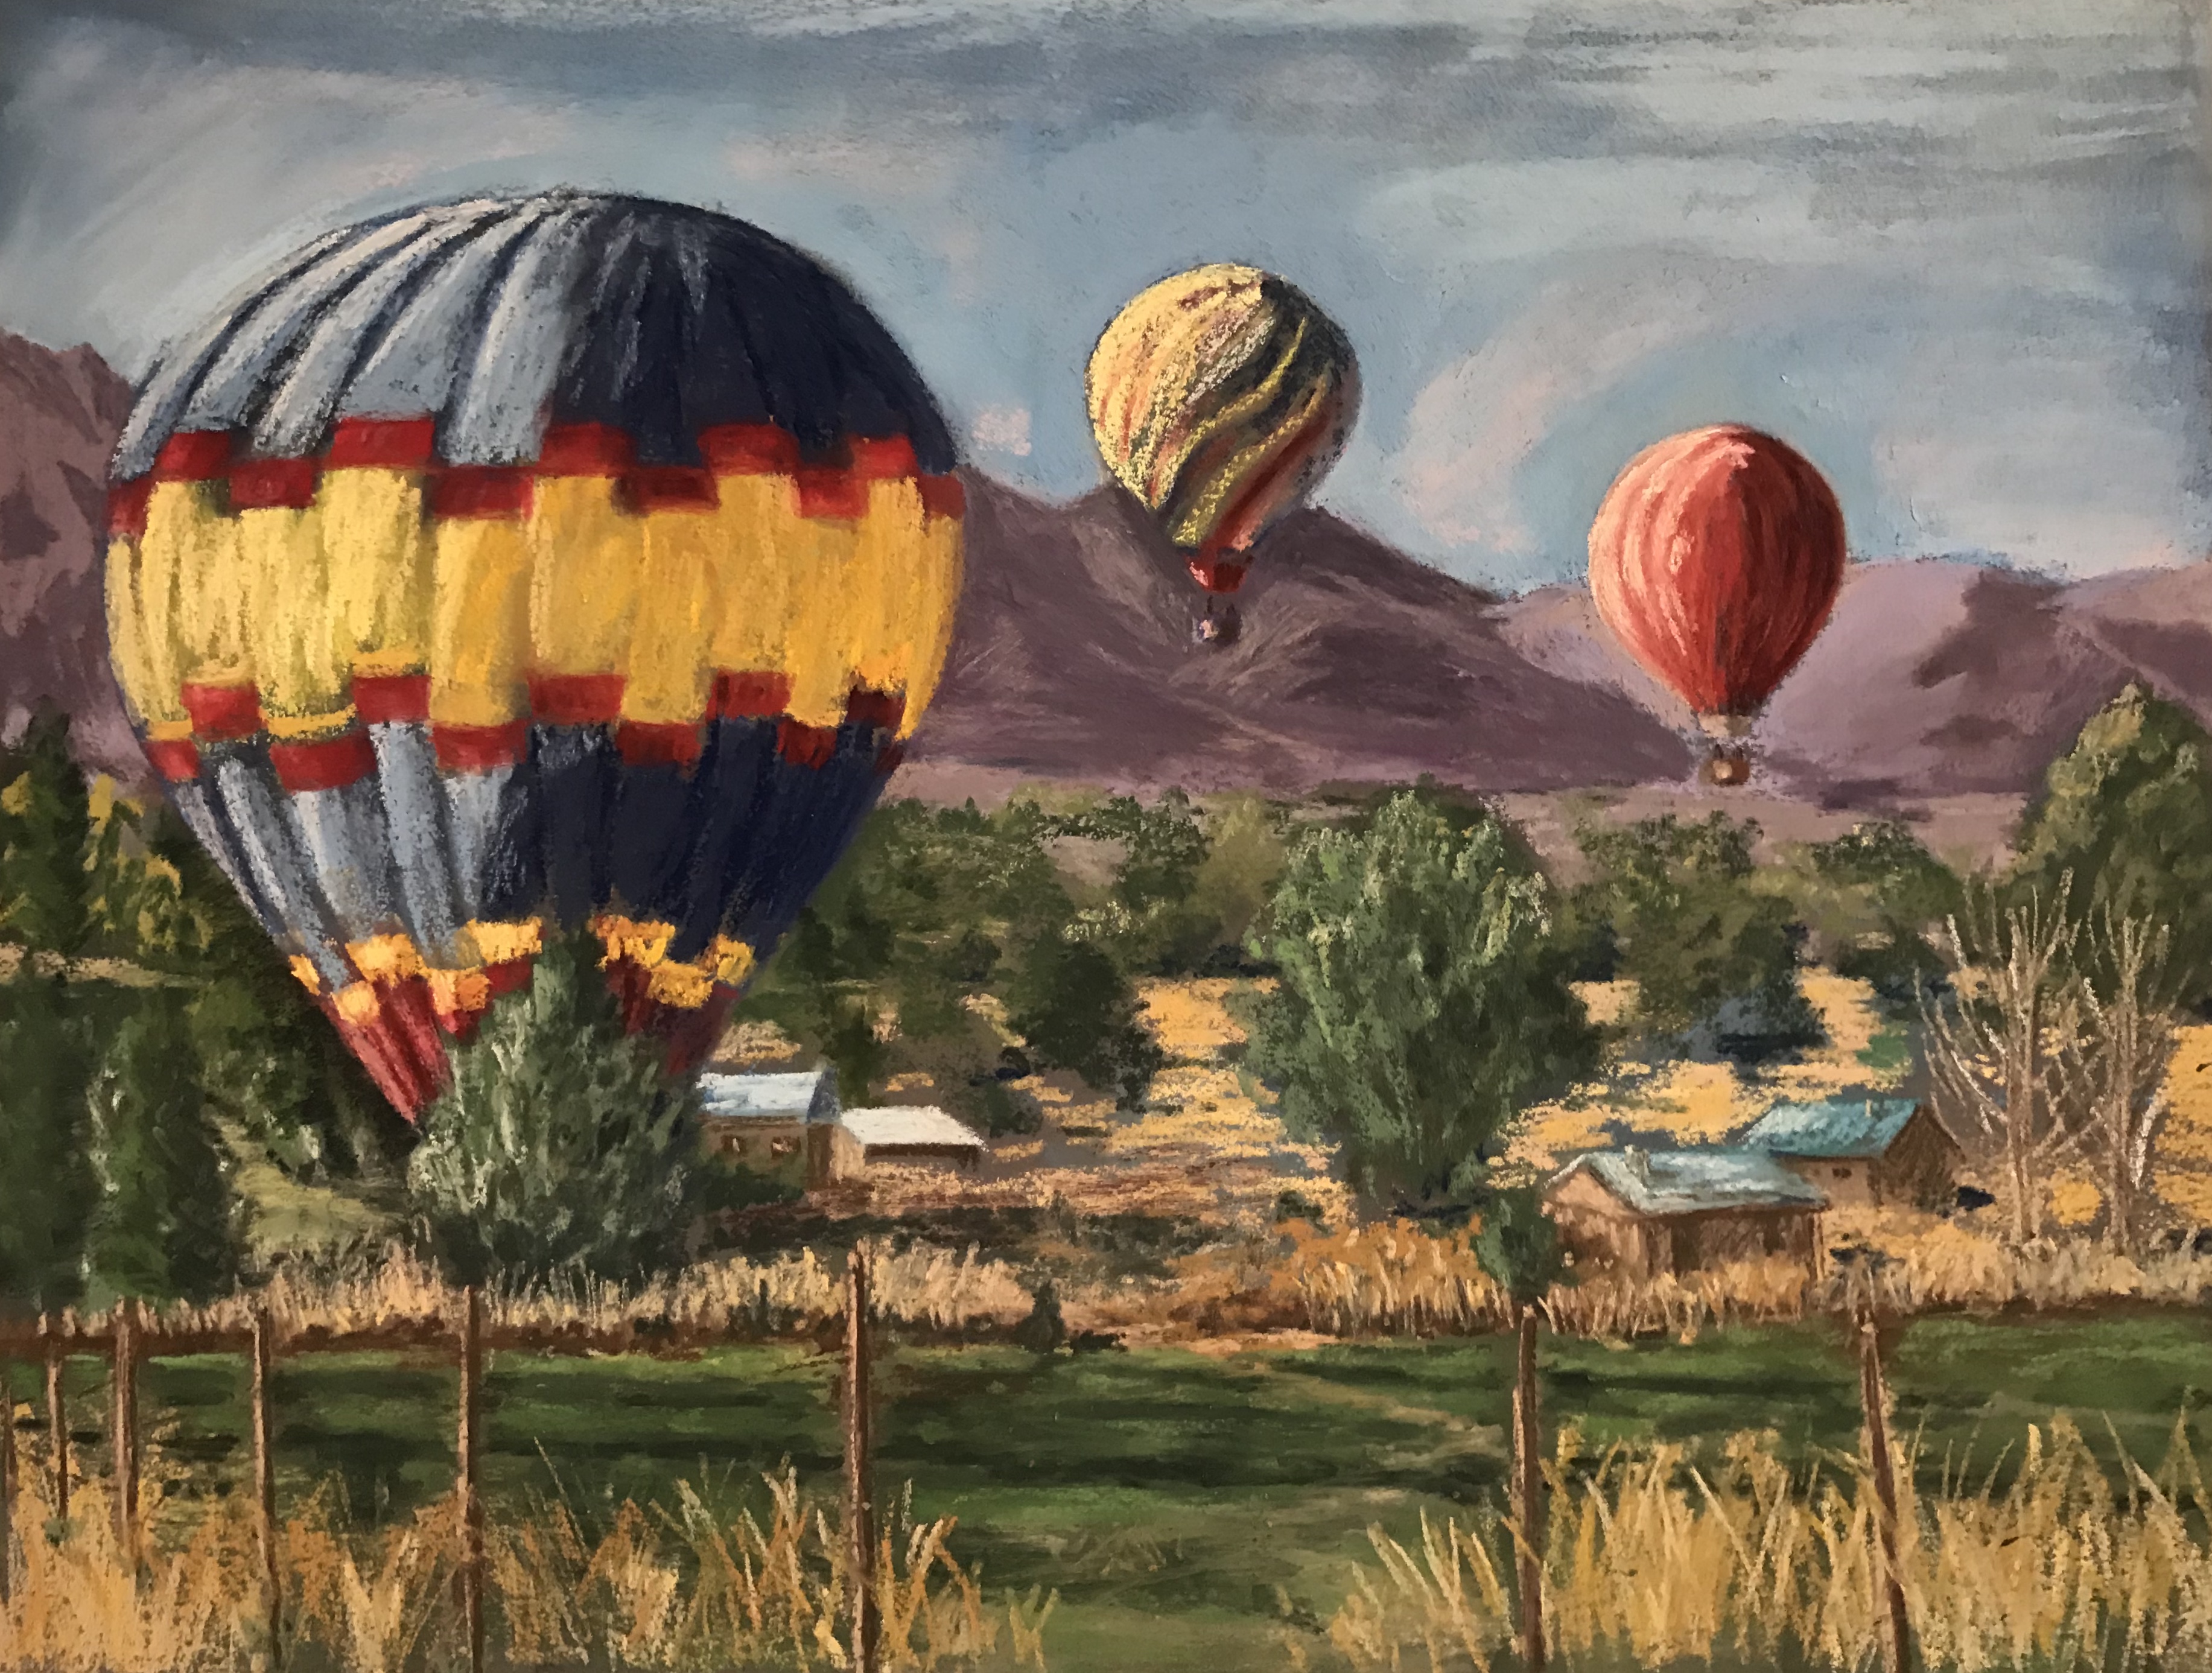 Taos Balloon Fiesta 2017